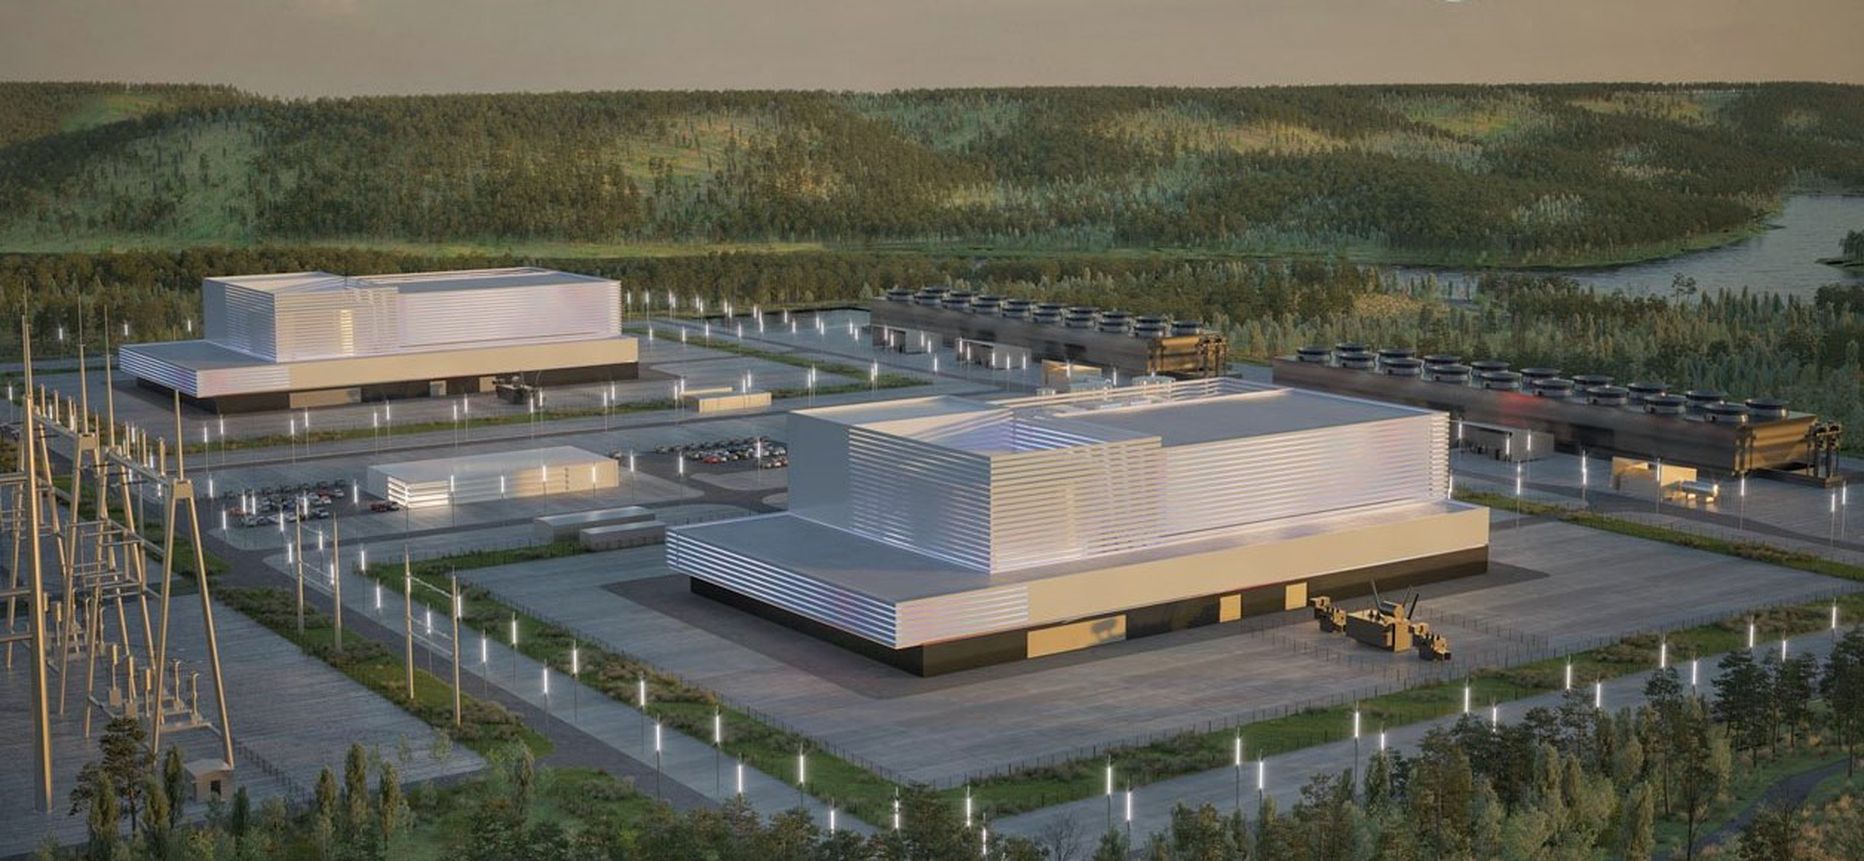 Маленьких реакторов такого типа в Финляндии два, а в Швеции пять, но существуют также реакторы в несколько раз больше и мощнее, работающие уже около 40 лет.